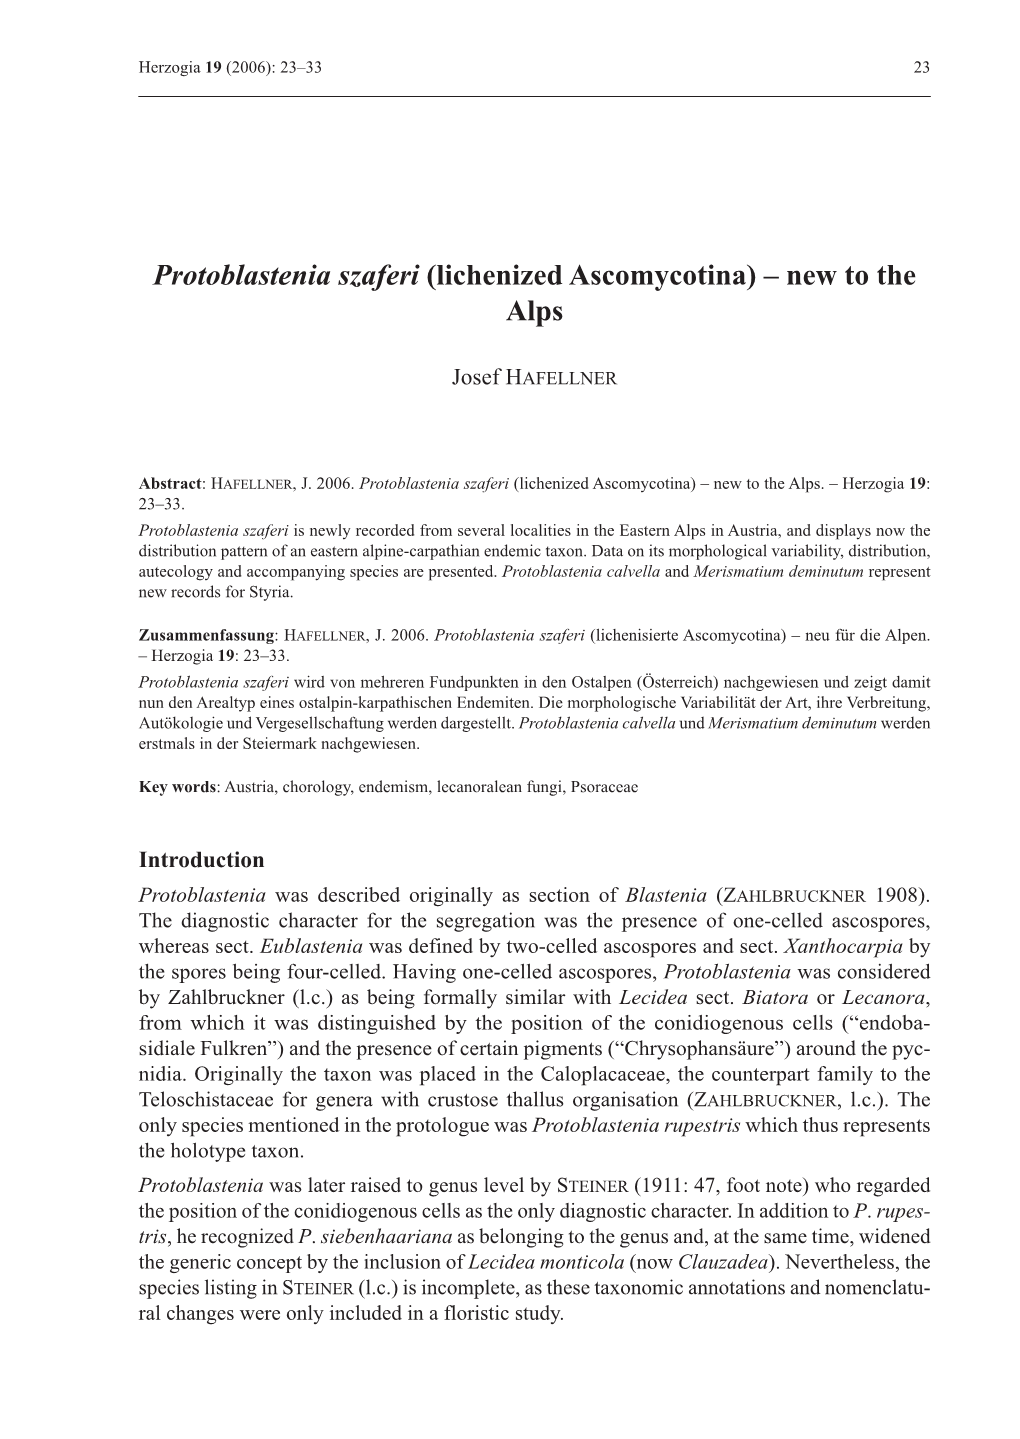 Protoblastenia Szaferi (Lichenized Ascomycotina) – New to the Alps